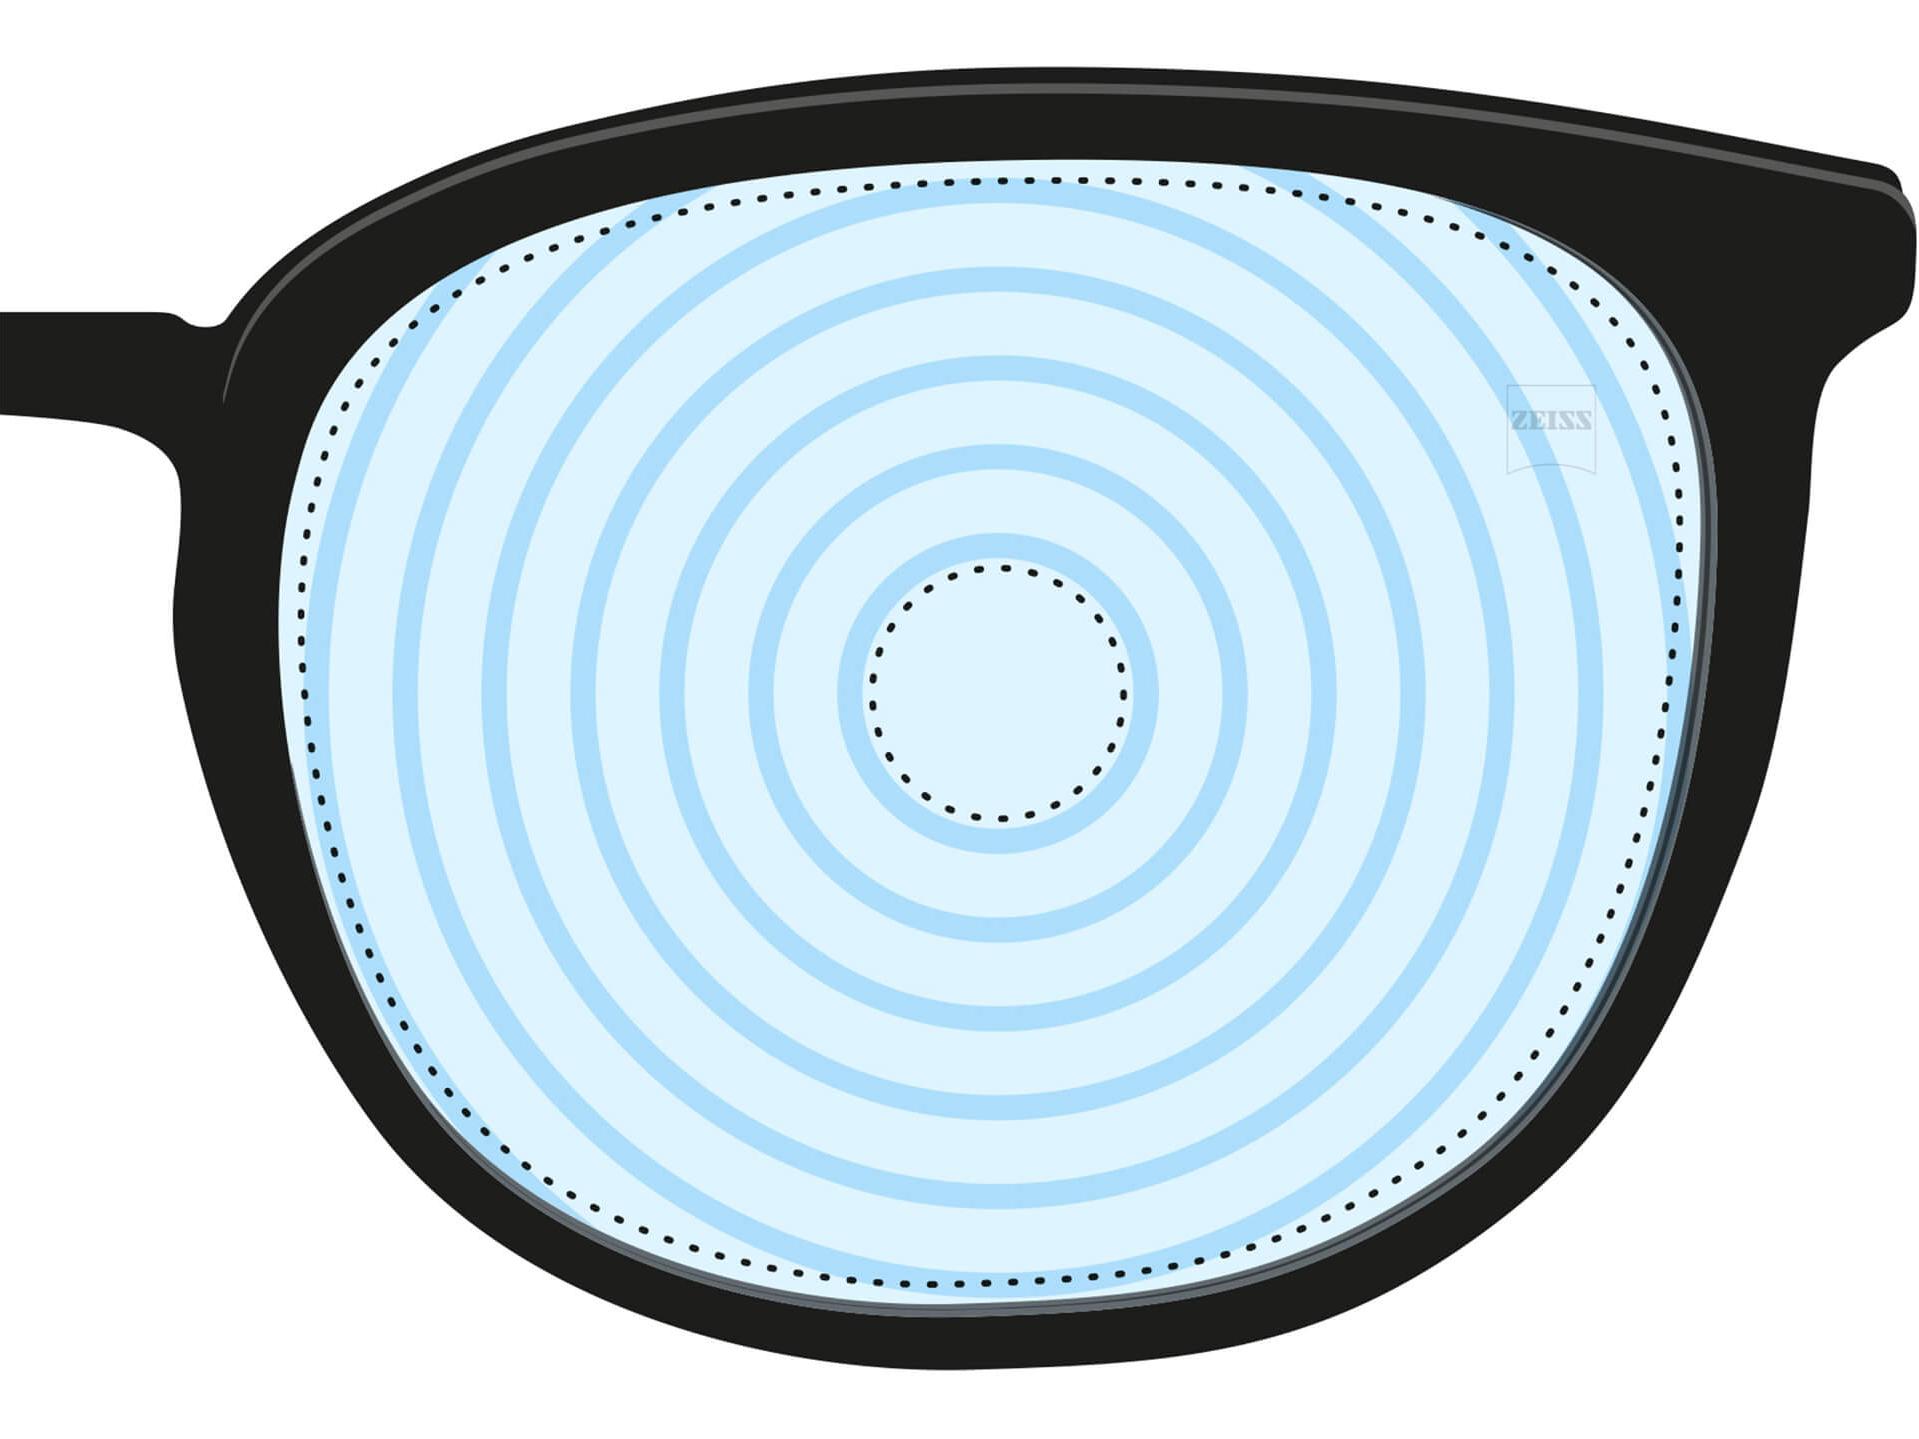 Una ilustración de una lente para el control de la miopía. Presenta círculos concéntricos que representan distintas potencias de lente. Se trata de un ejemplo de diseño de lente para un fin especializado.